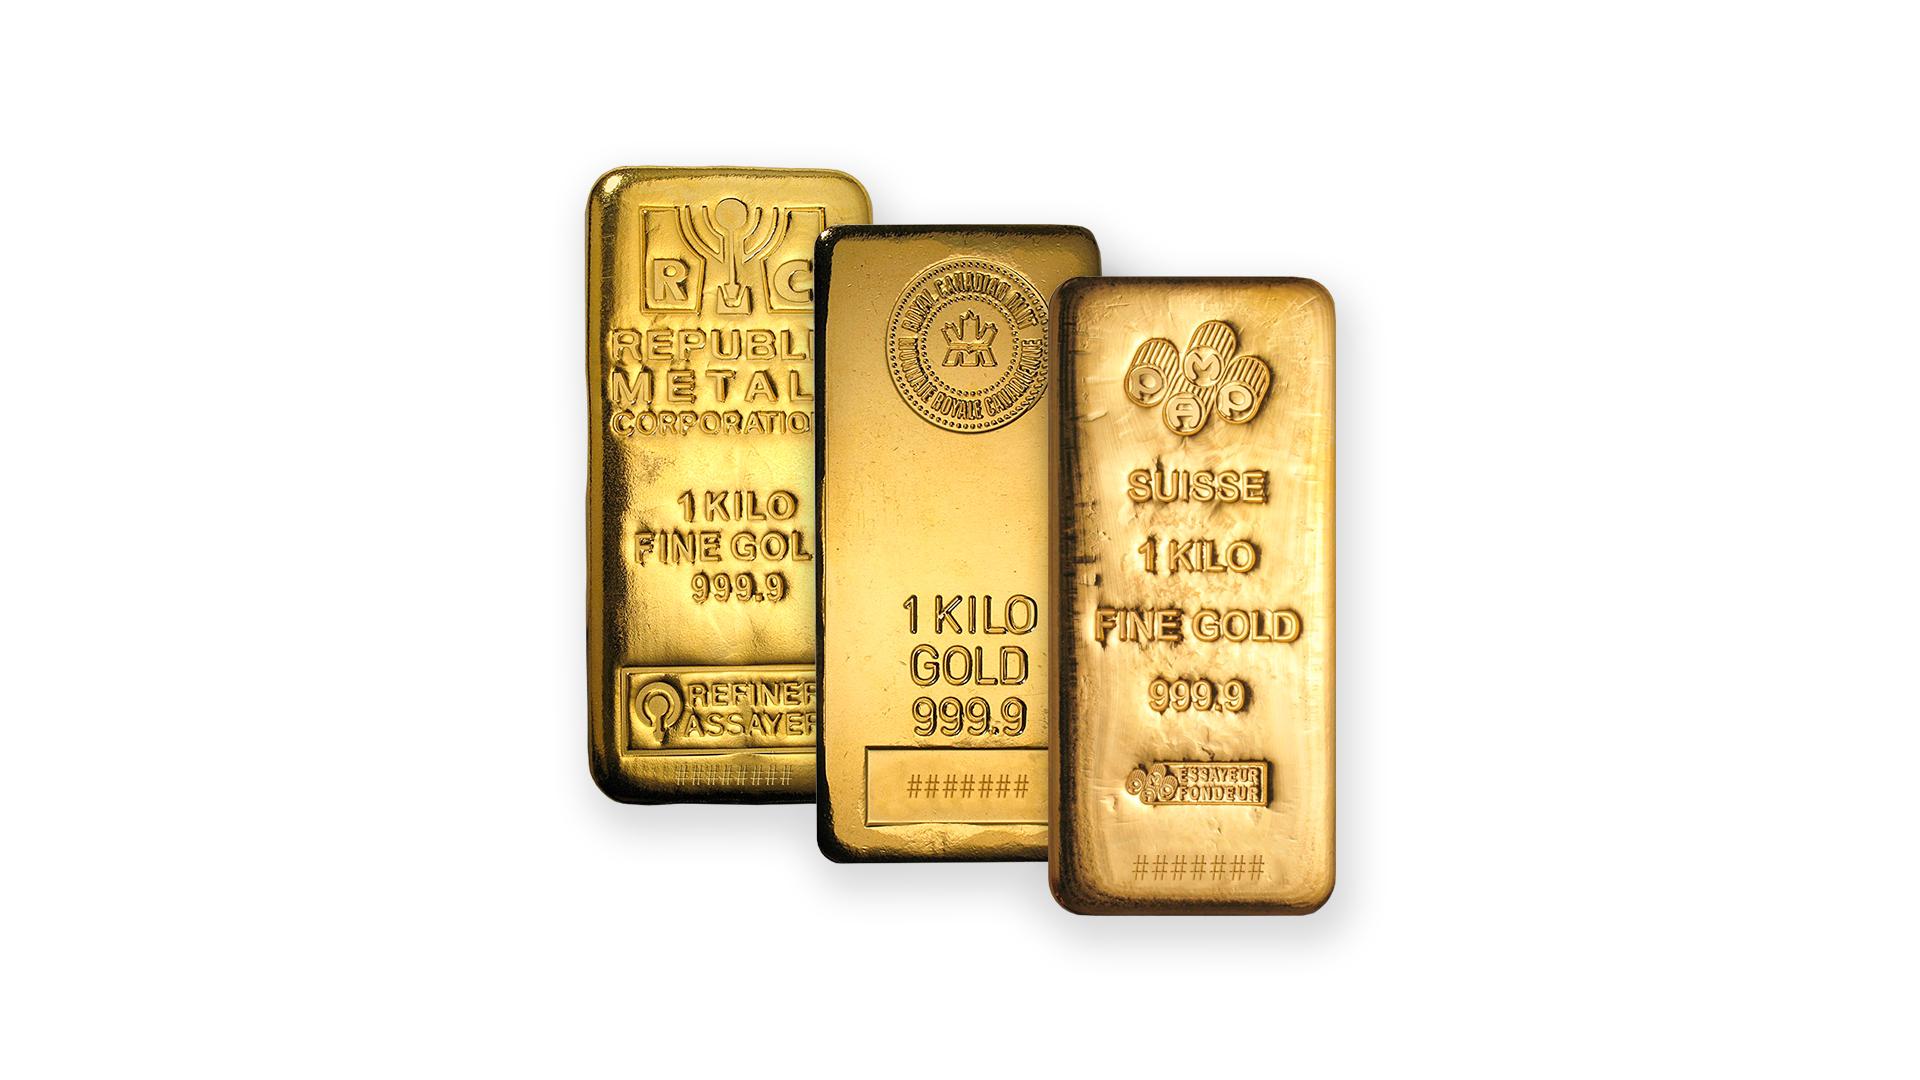 Как получить 50 золото. Медный слиток 99999. Price of 1 kilo Gold. One kilo of Gold. Компания Texas precious Metals сотрудники.